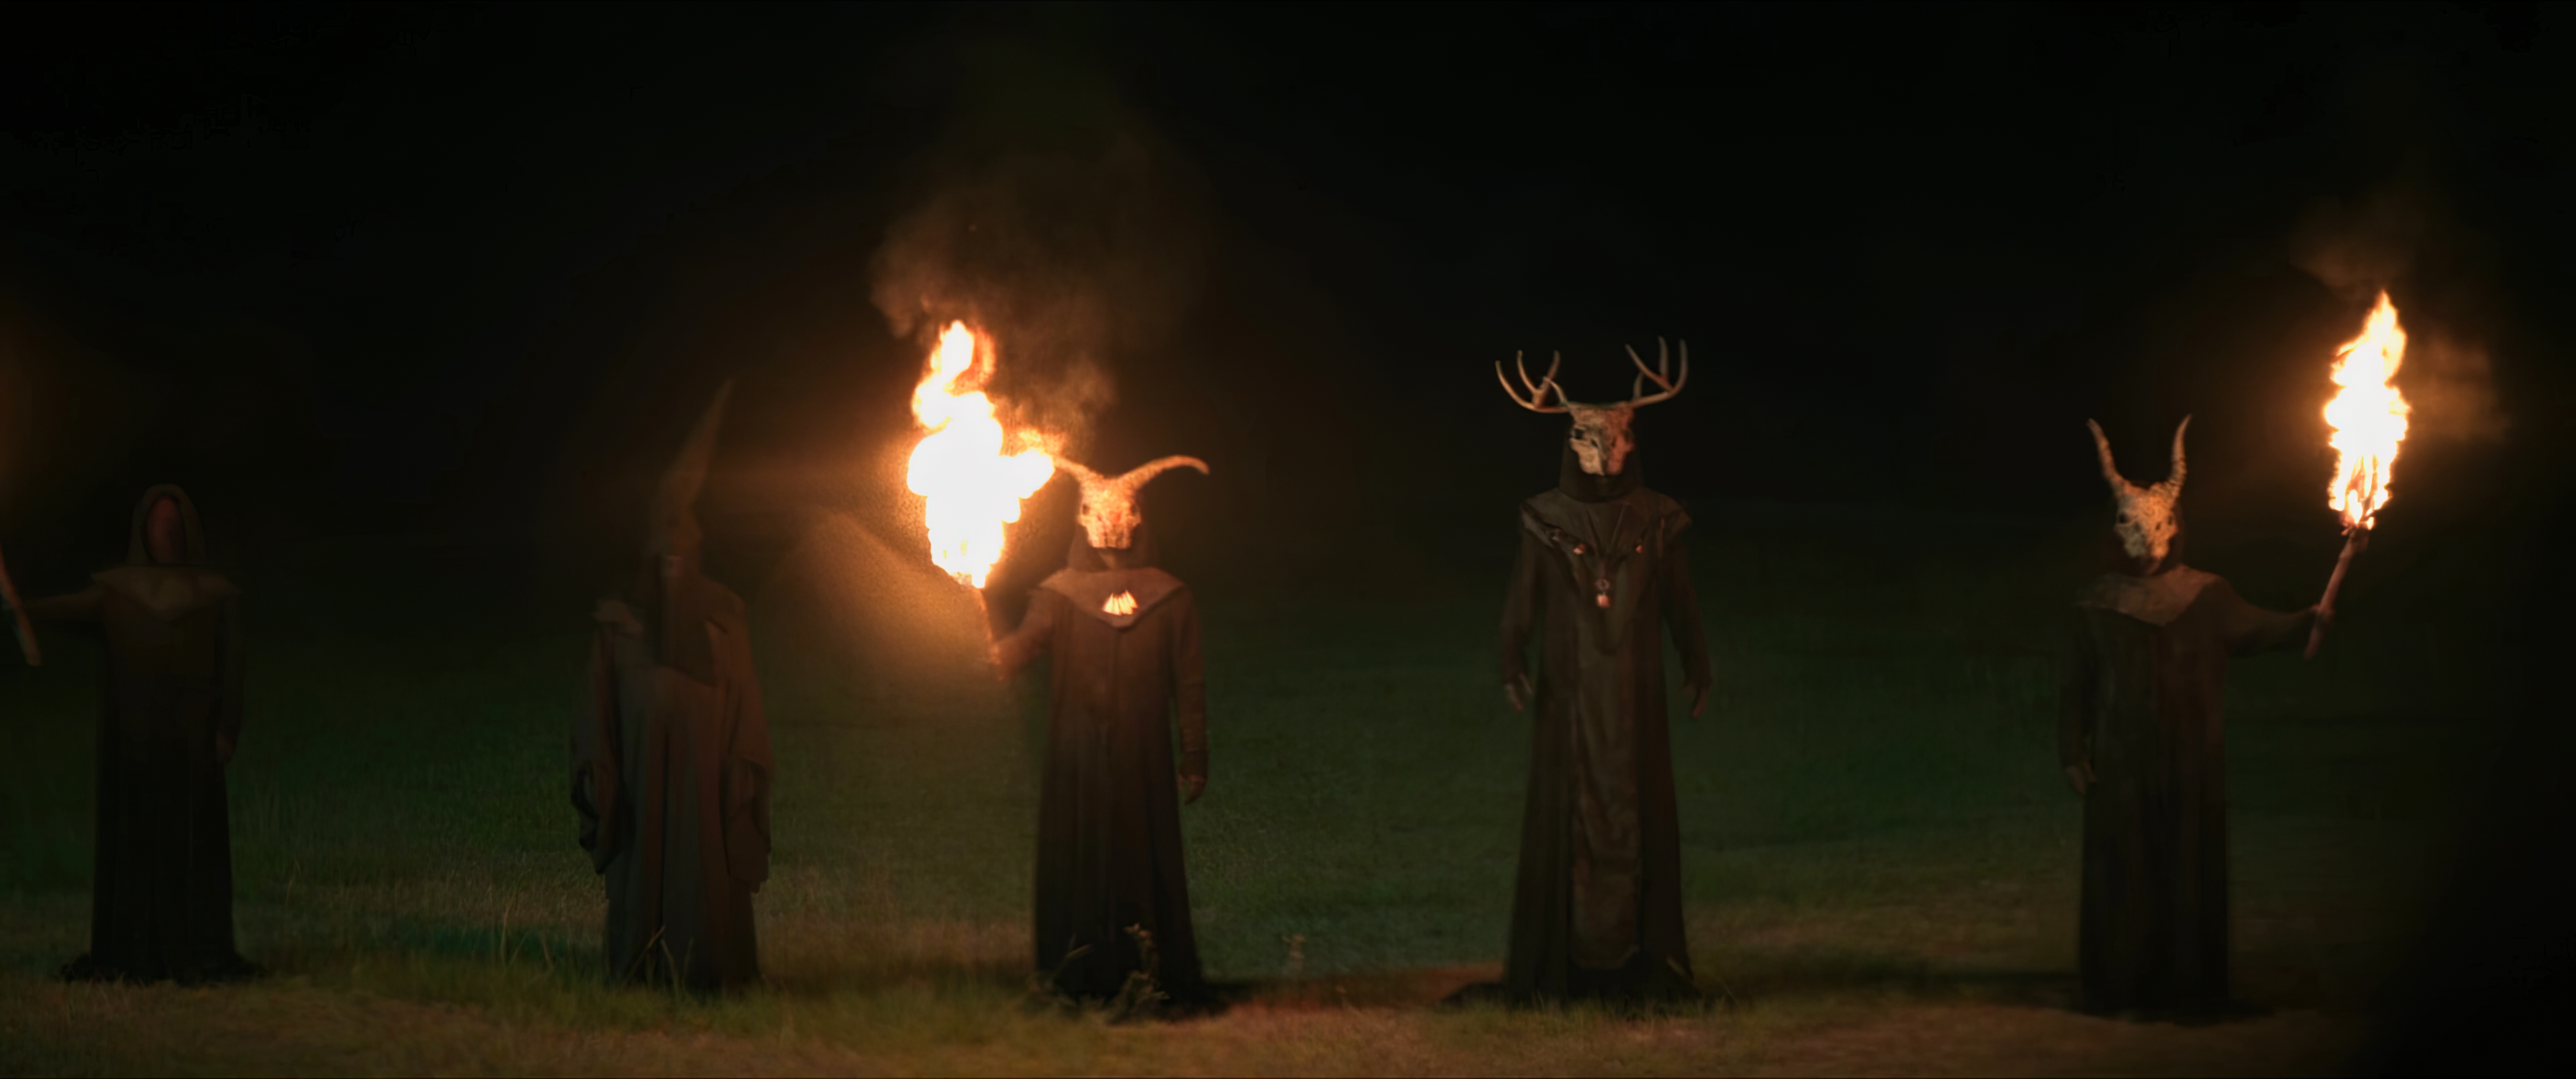 Демонический ритуал тёмных колдунов, Служители тьмы, Сатанисты в масках